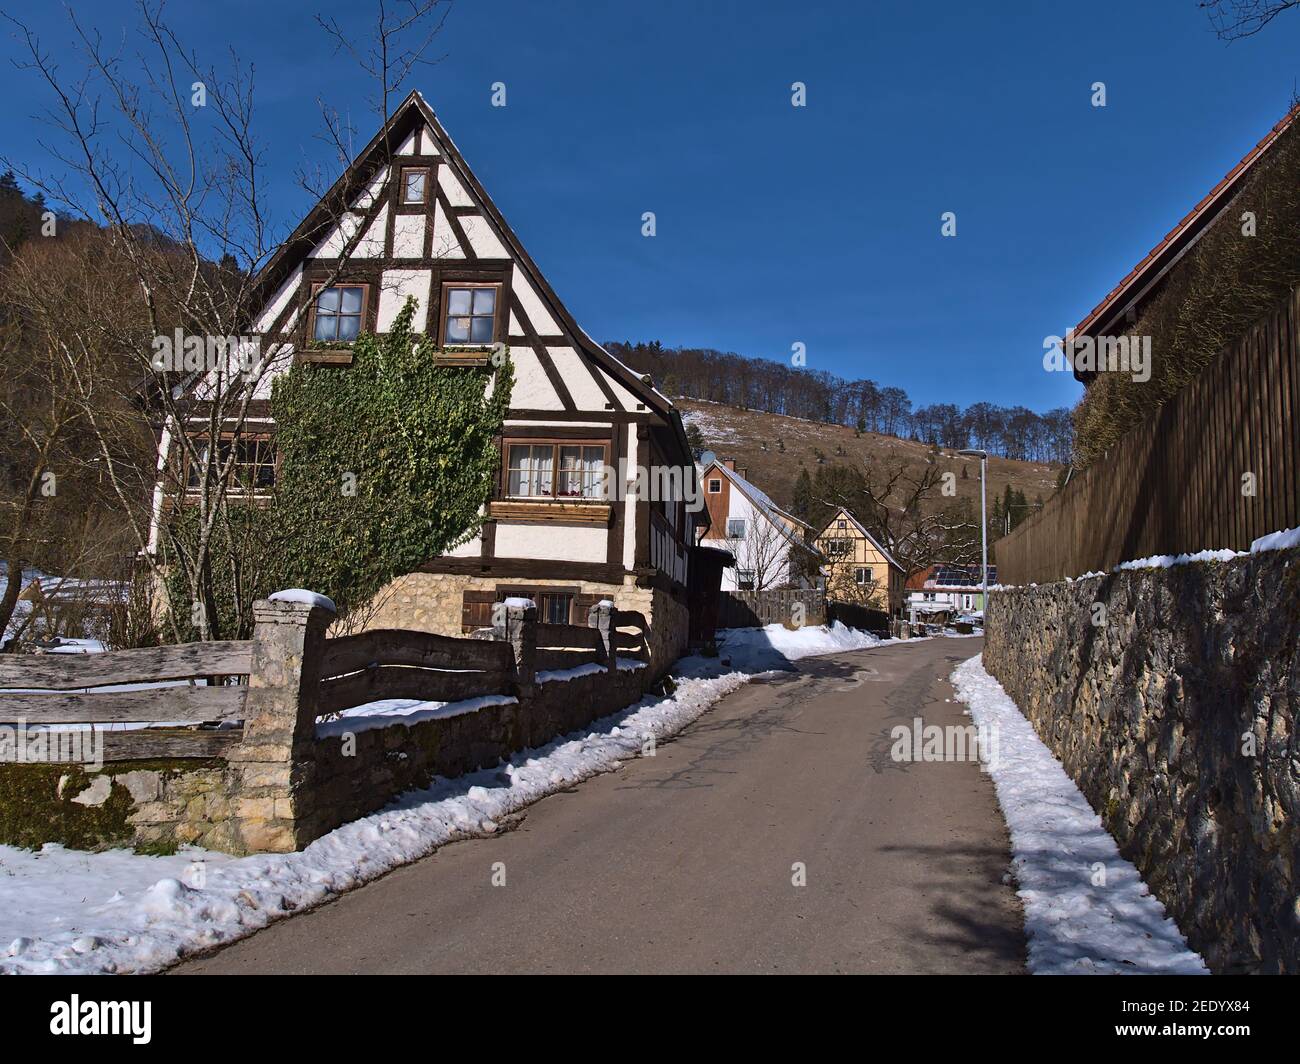 Storica casa a graticcio con recinzione in legno, muro di pietra e strada lastricata nel piccolo villaggio rurale Gundelfingen, parte di Münsingen, Germania. Foto Stock